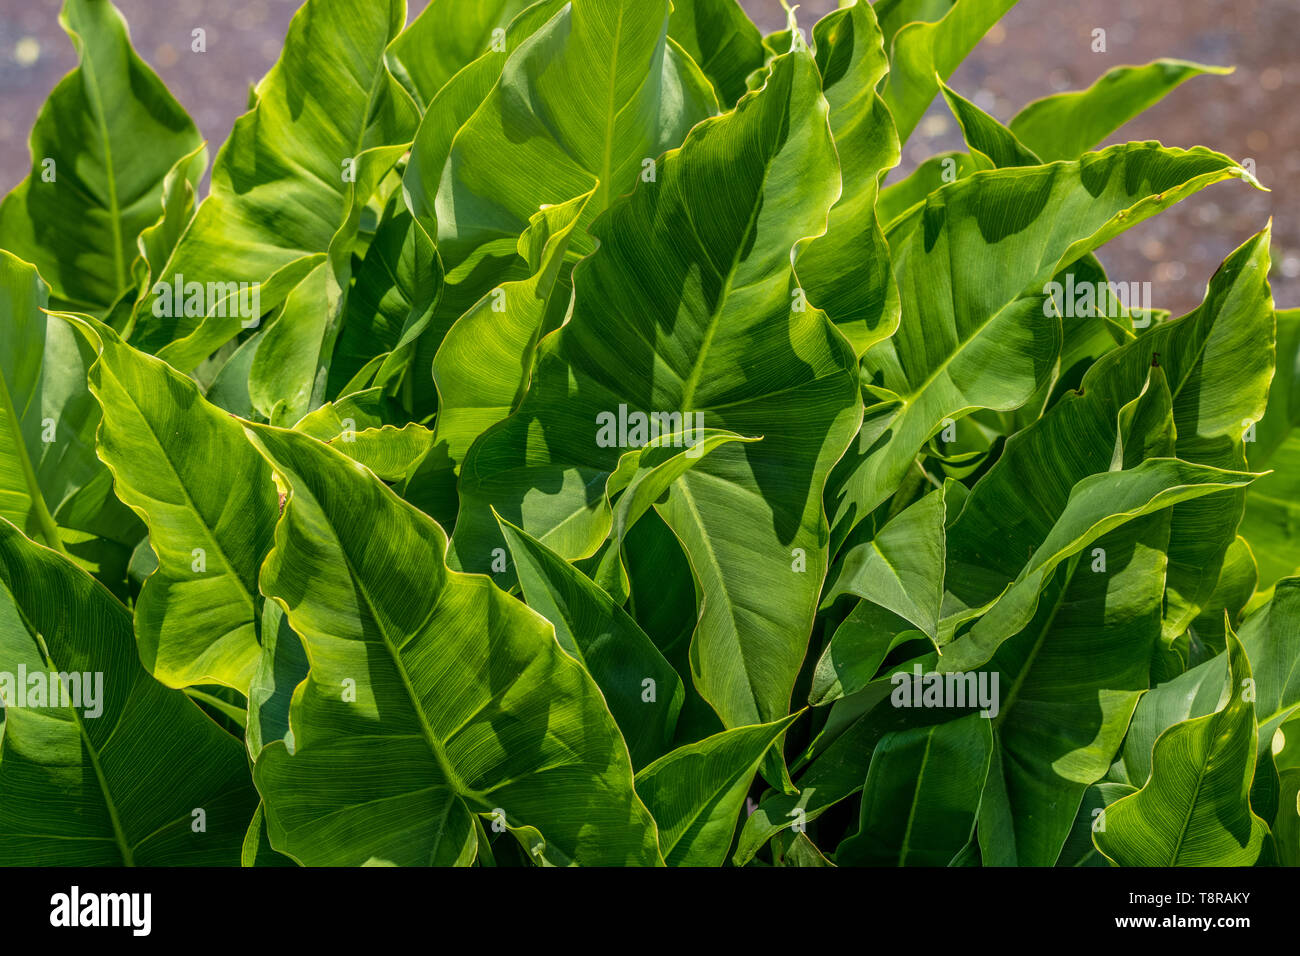 Arrowhead impianto (sagittaria latifolia) in una zona umida di inghiottire l'acqua. Foto Stock